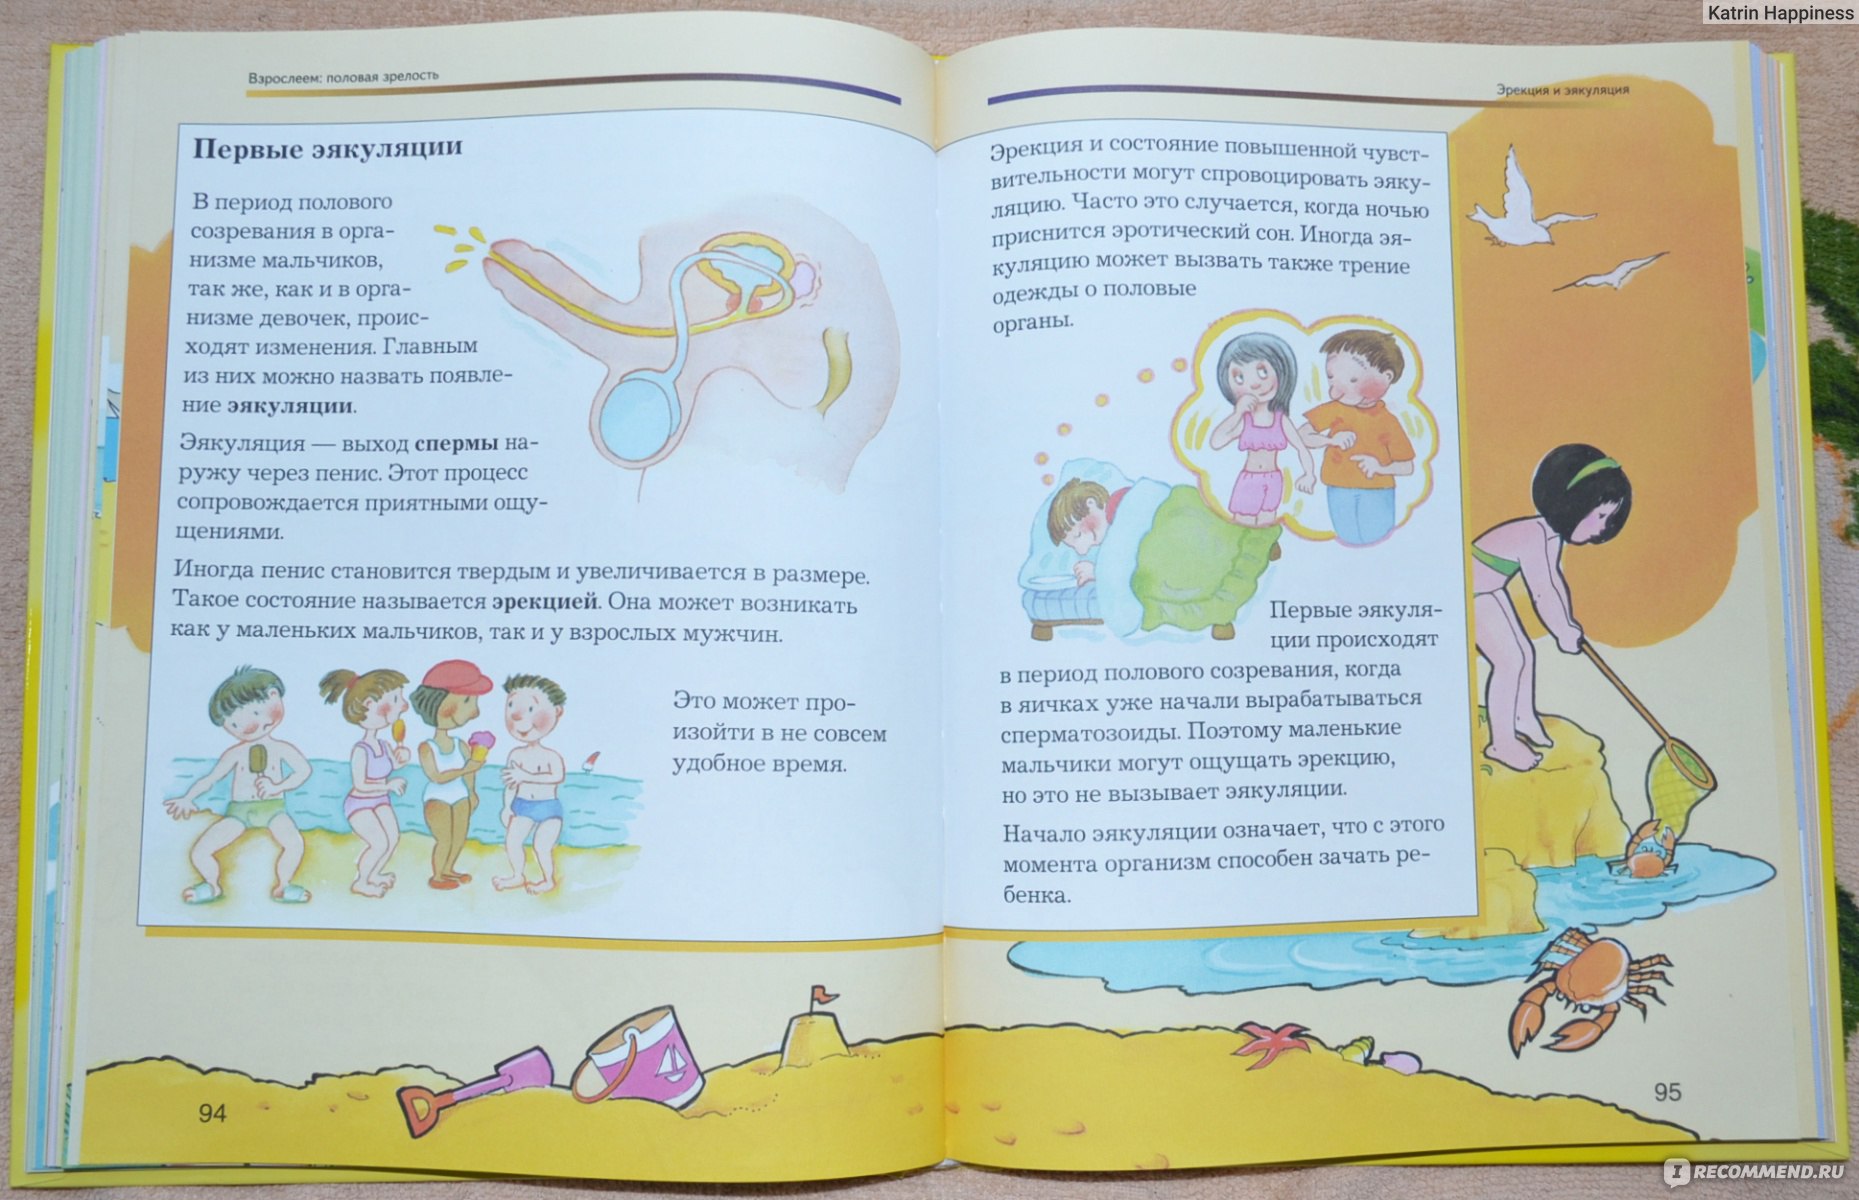 18 рассказы мать. Детям об этом книга. Разговор об этом книга для детей. Книги для детей по половому развитию. Книги о половом развитии для малышей.